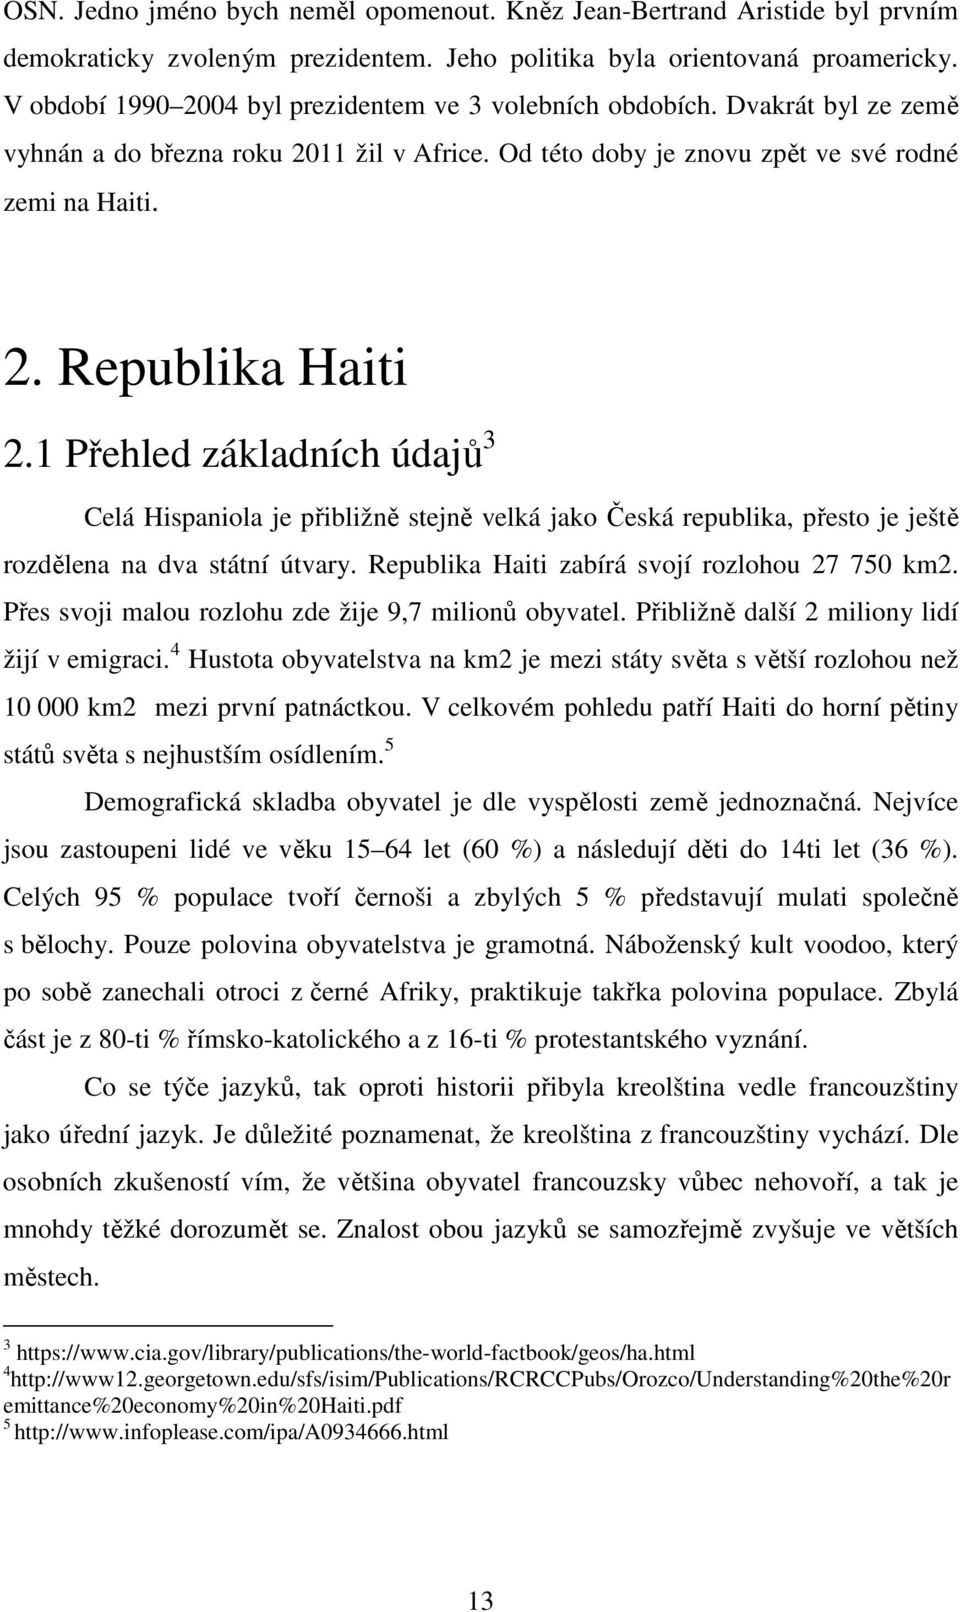 1 Přehled základních údajů 3 Celá Hispaniola je přibližně stejně velká jako Česká republika, přesto je ještě rozdělena na dva státní útvary. Republika Haiti zabírá svojí rozlohou 27 750 km2.